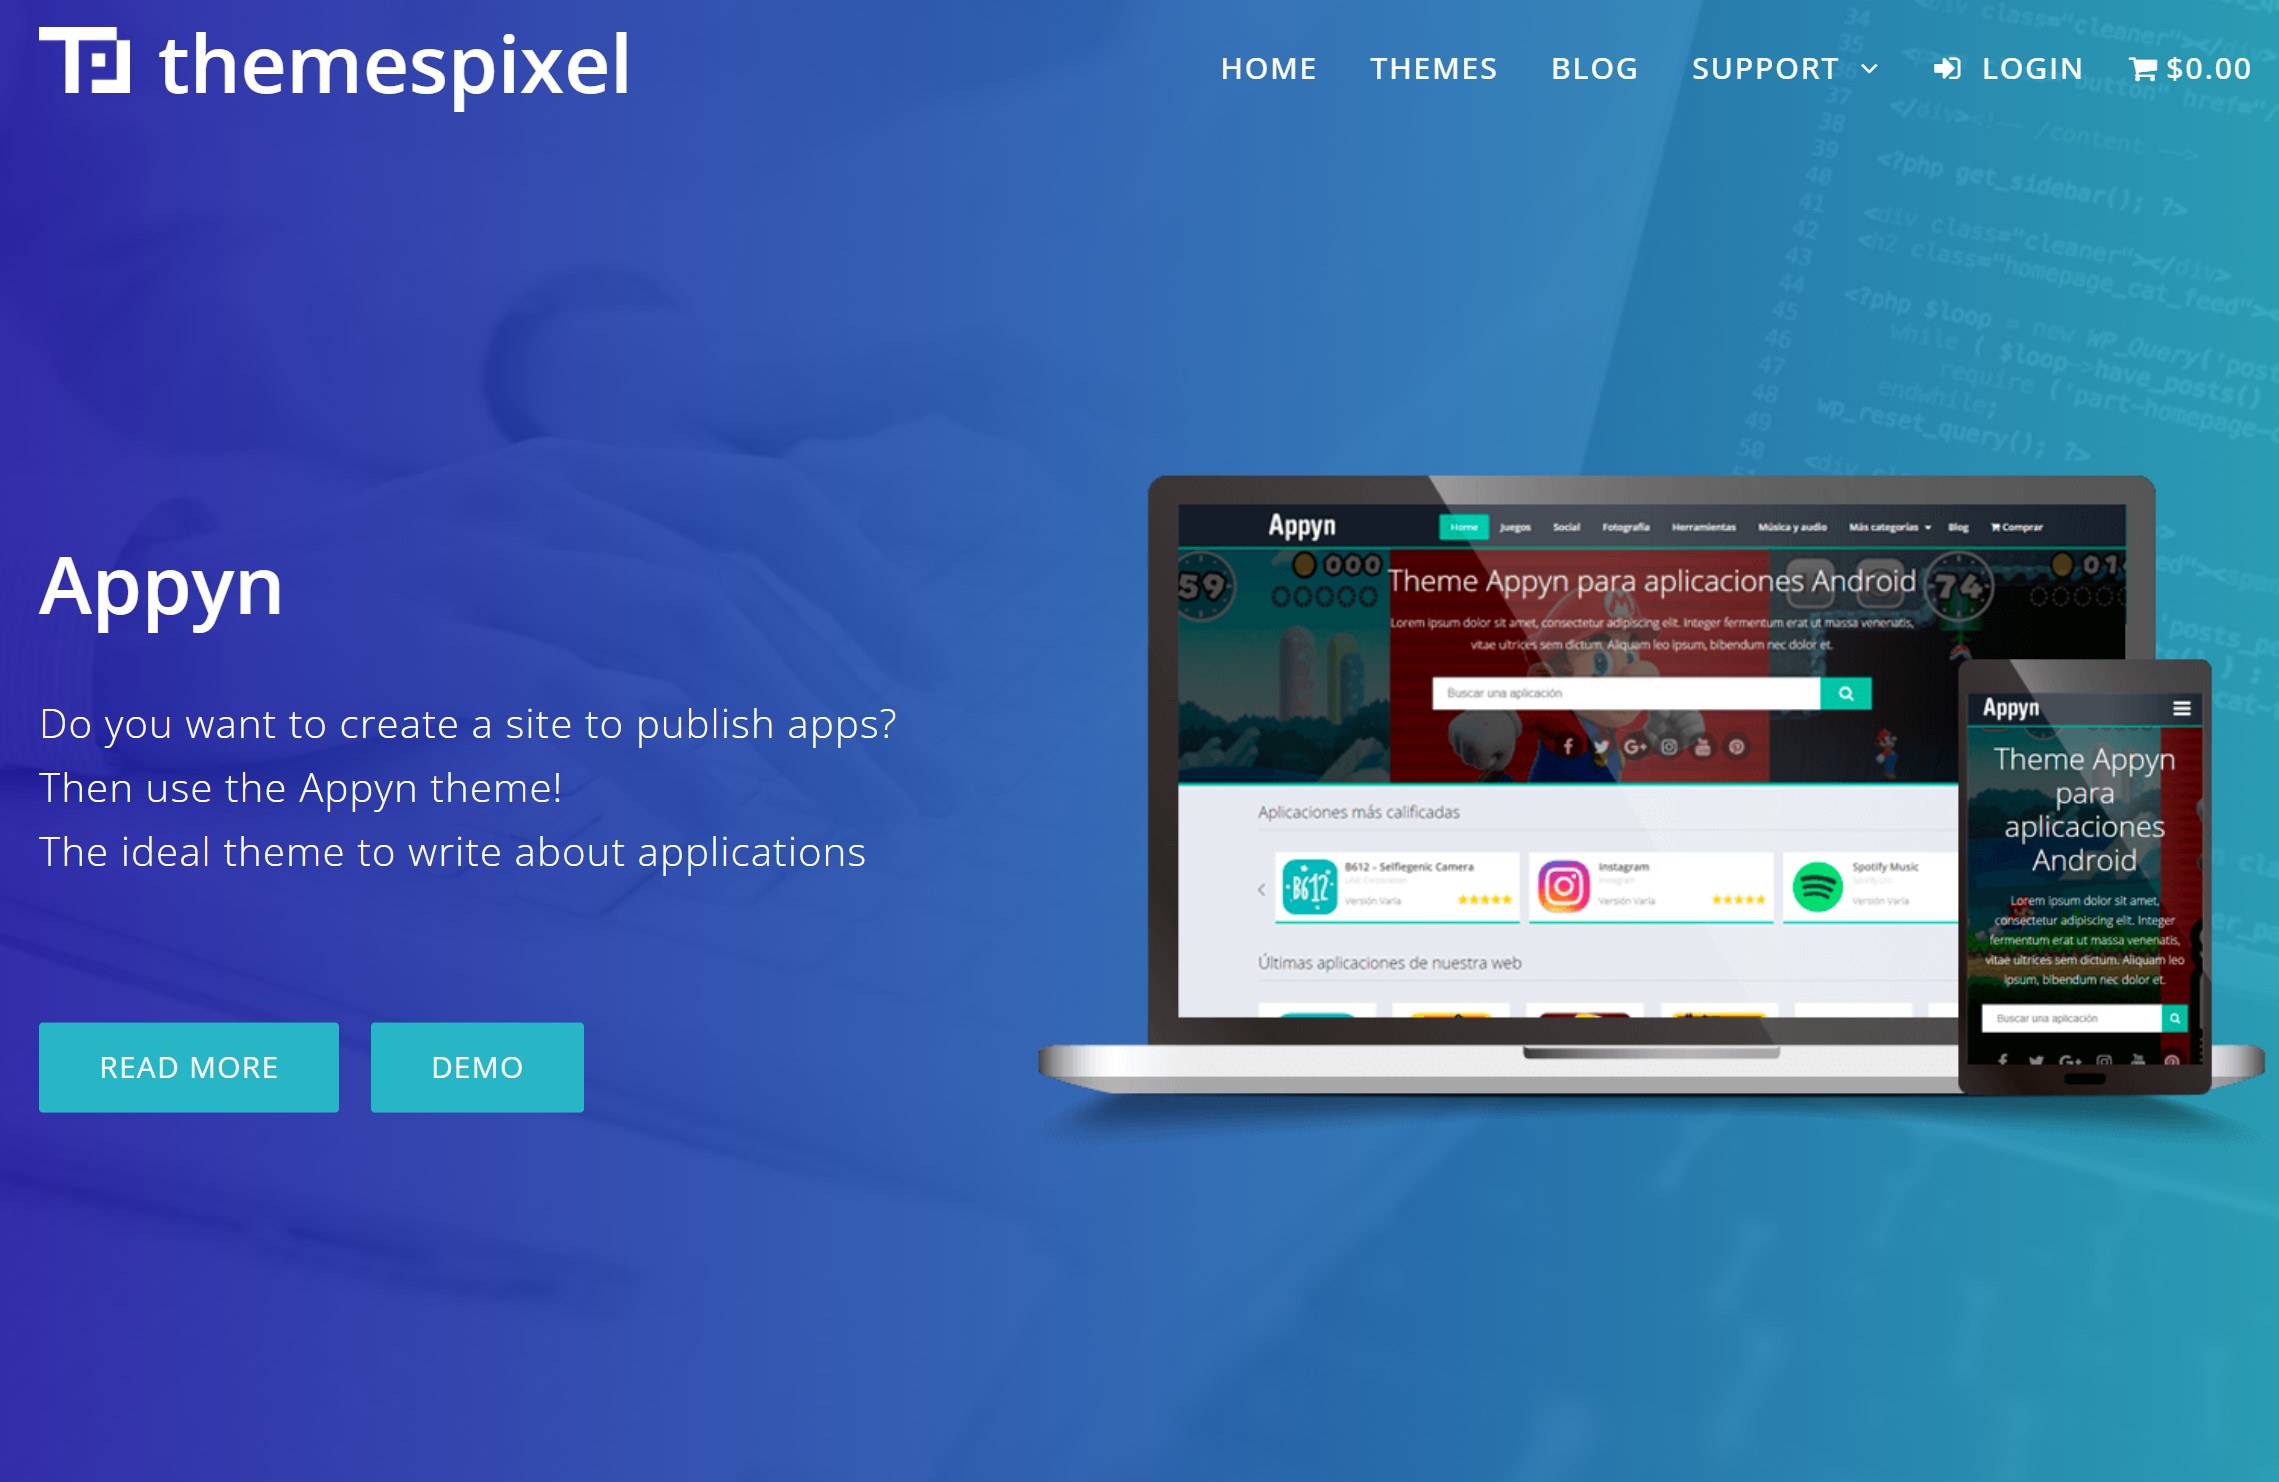 Appyn – Themespixel WordPress Theme 2.0.11